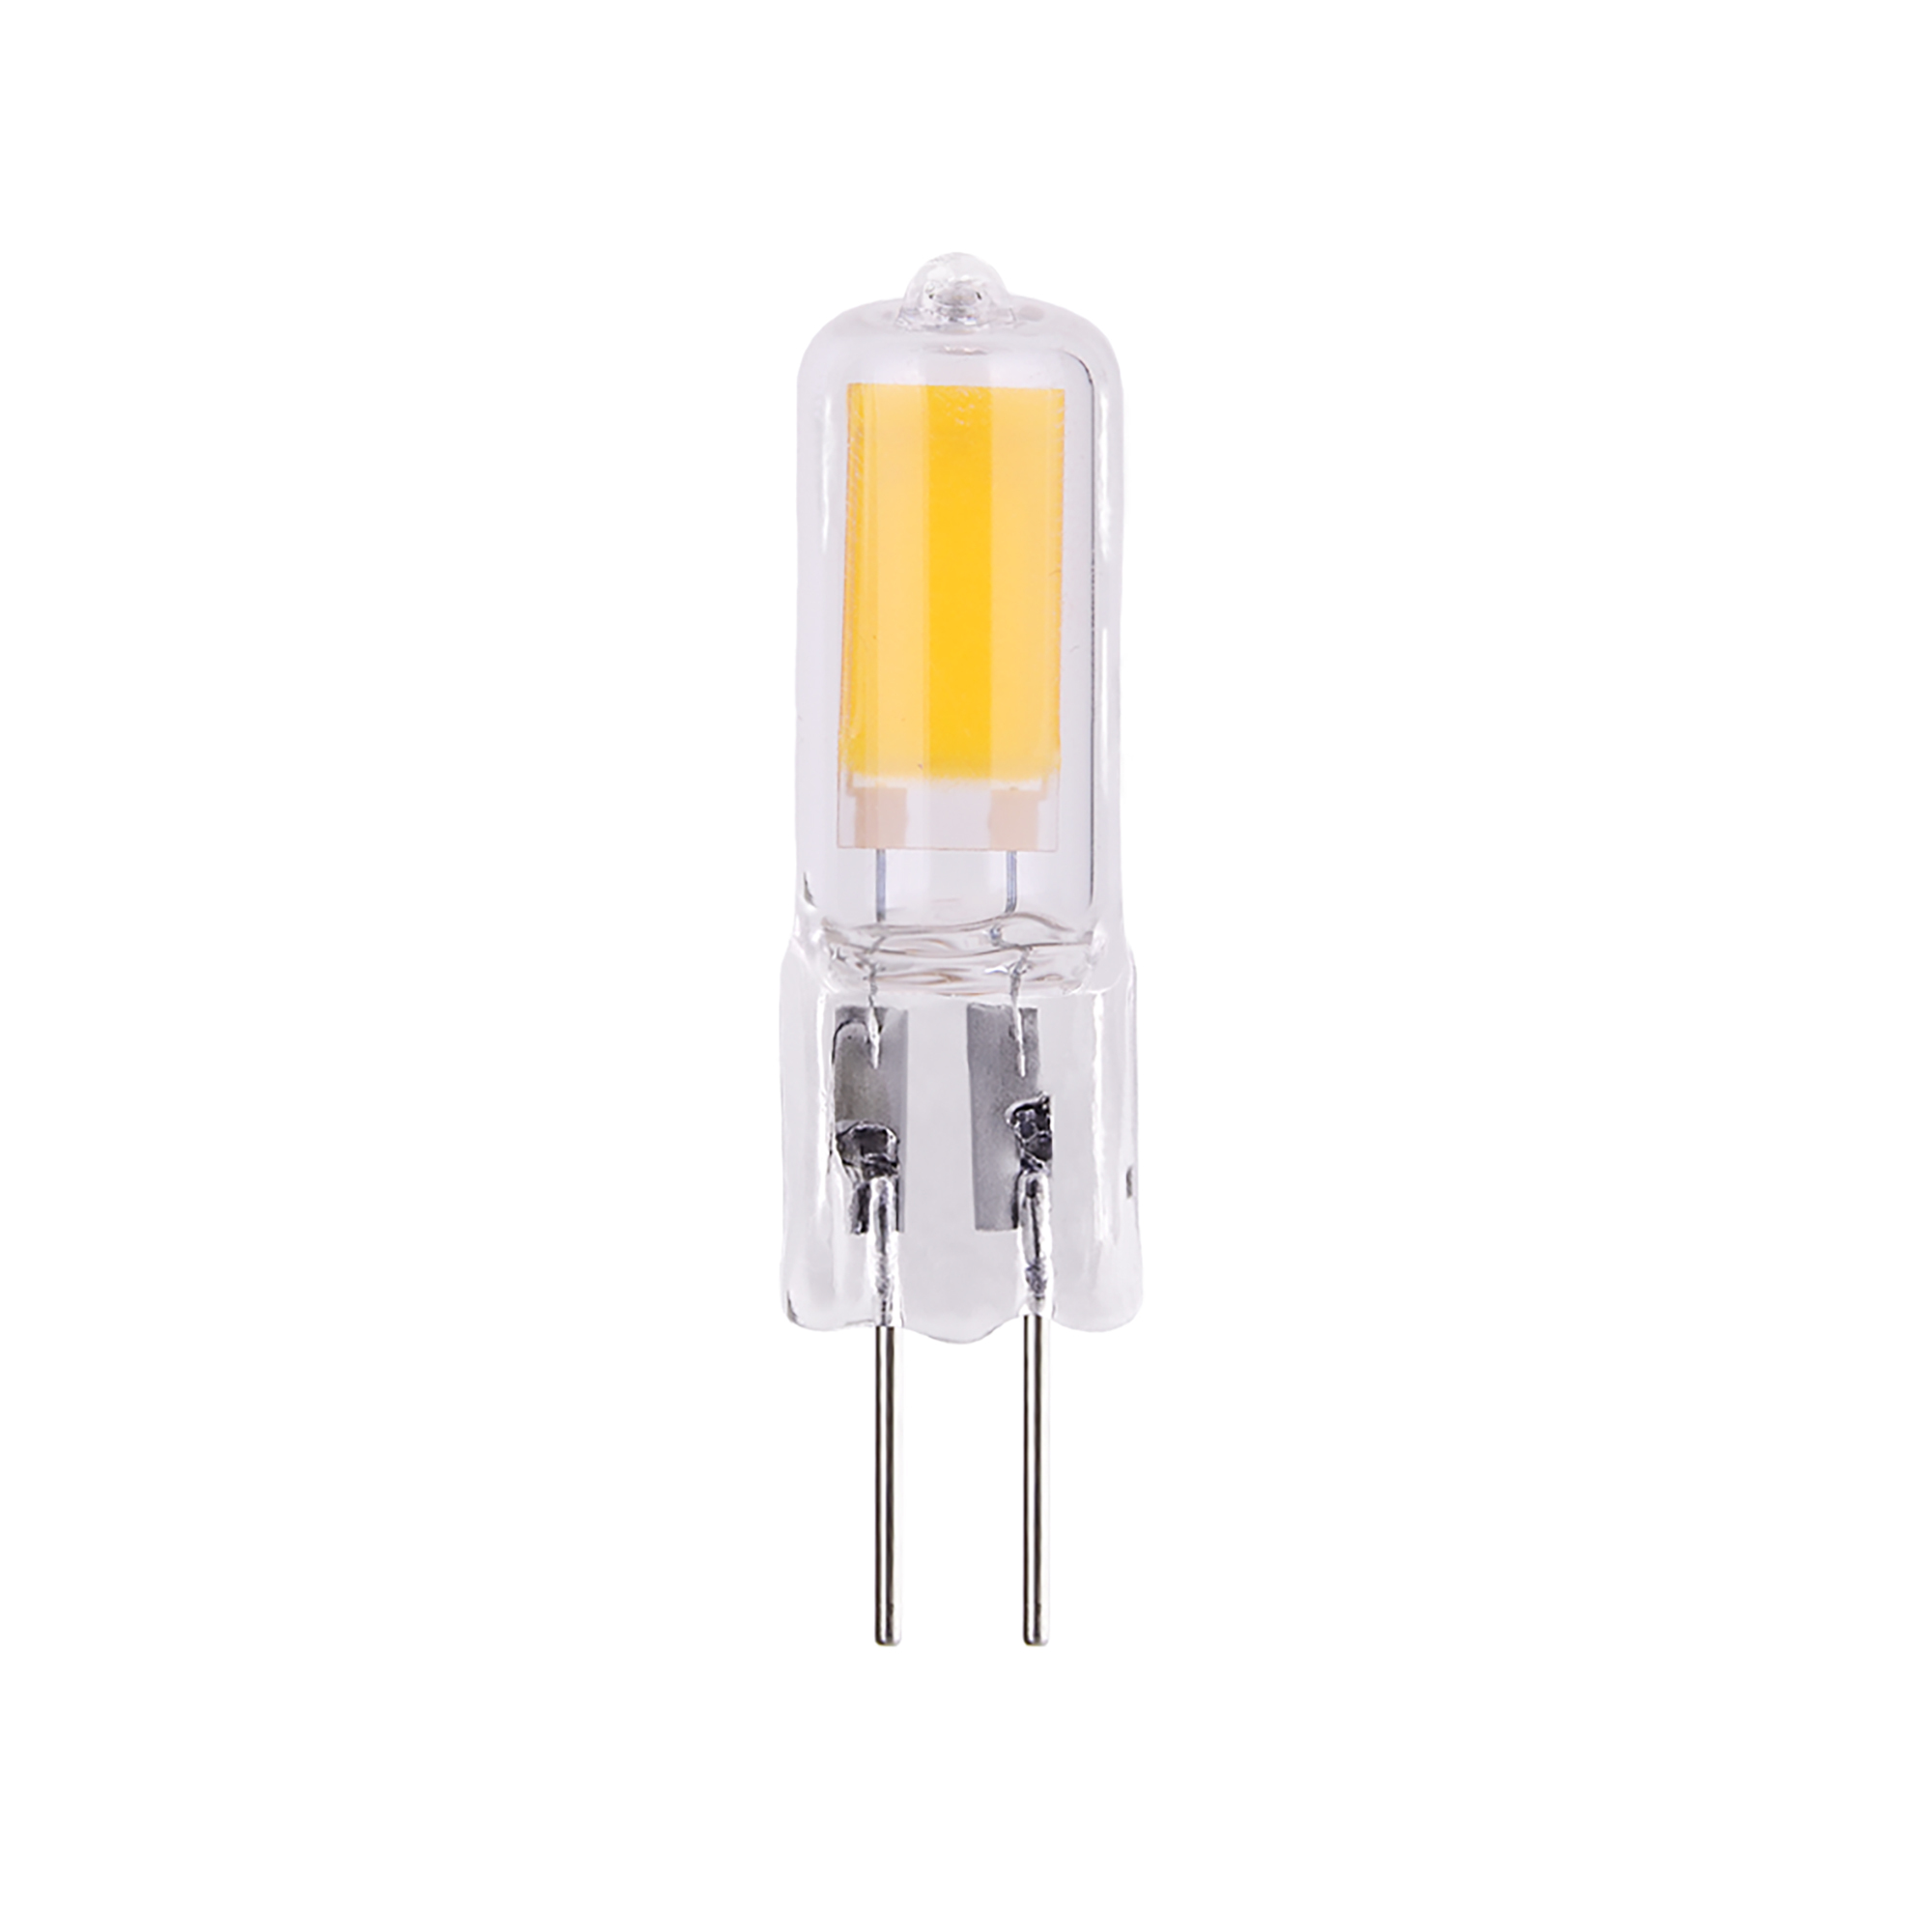 Лампа светодиодная Elektrostandard G4 JCD 3 Вт 6500К холодный свет 220 В капсула (BLG418)